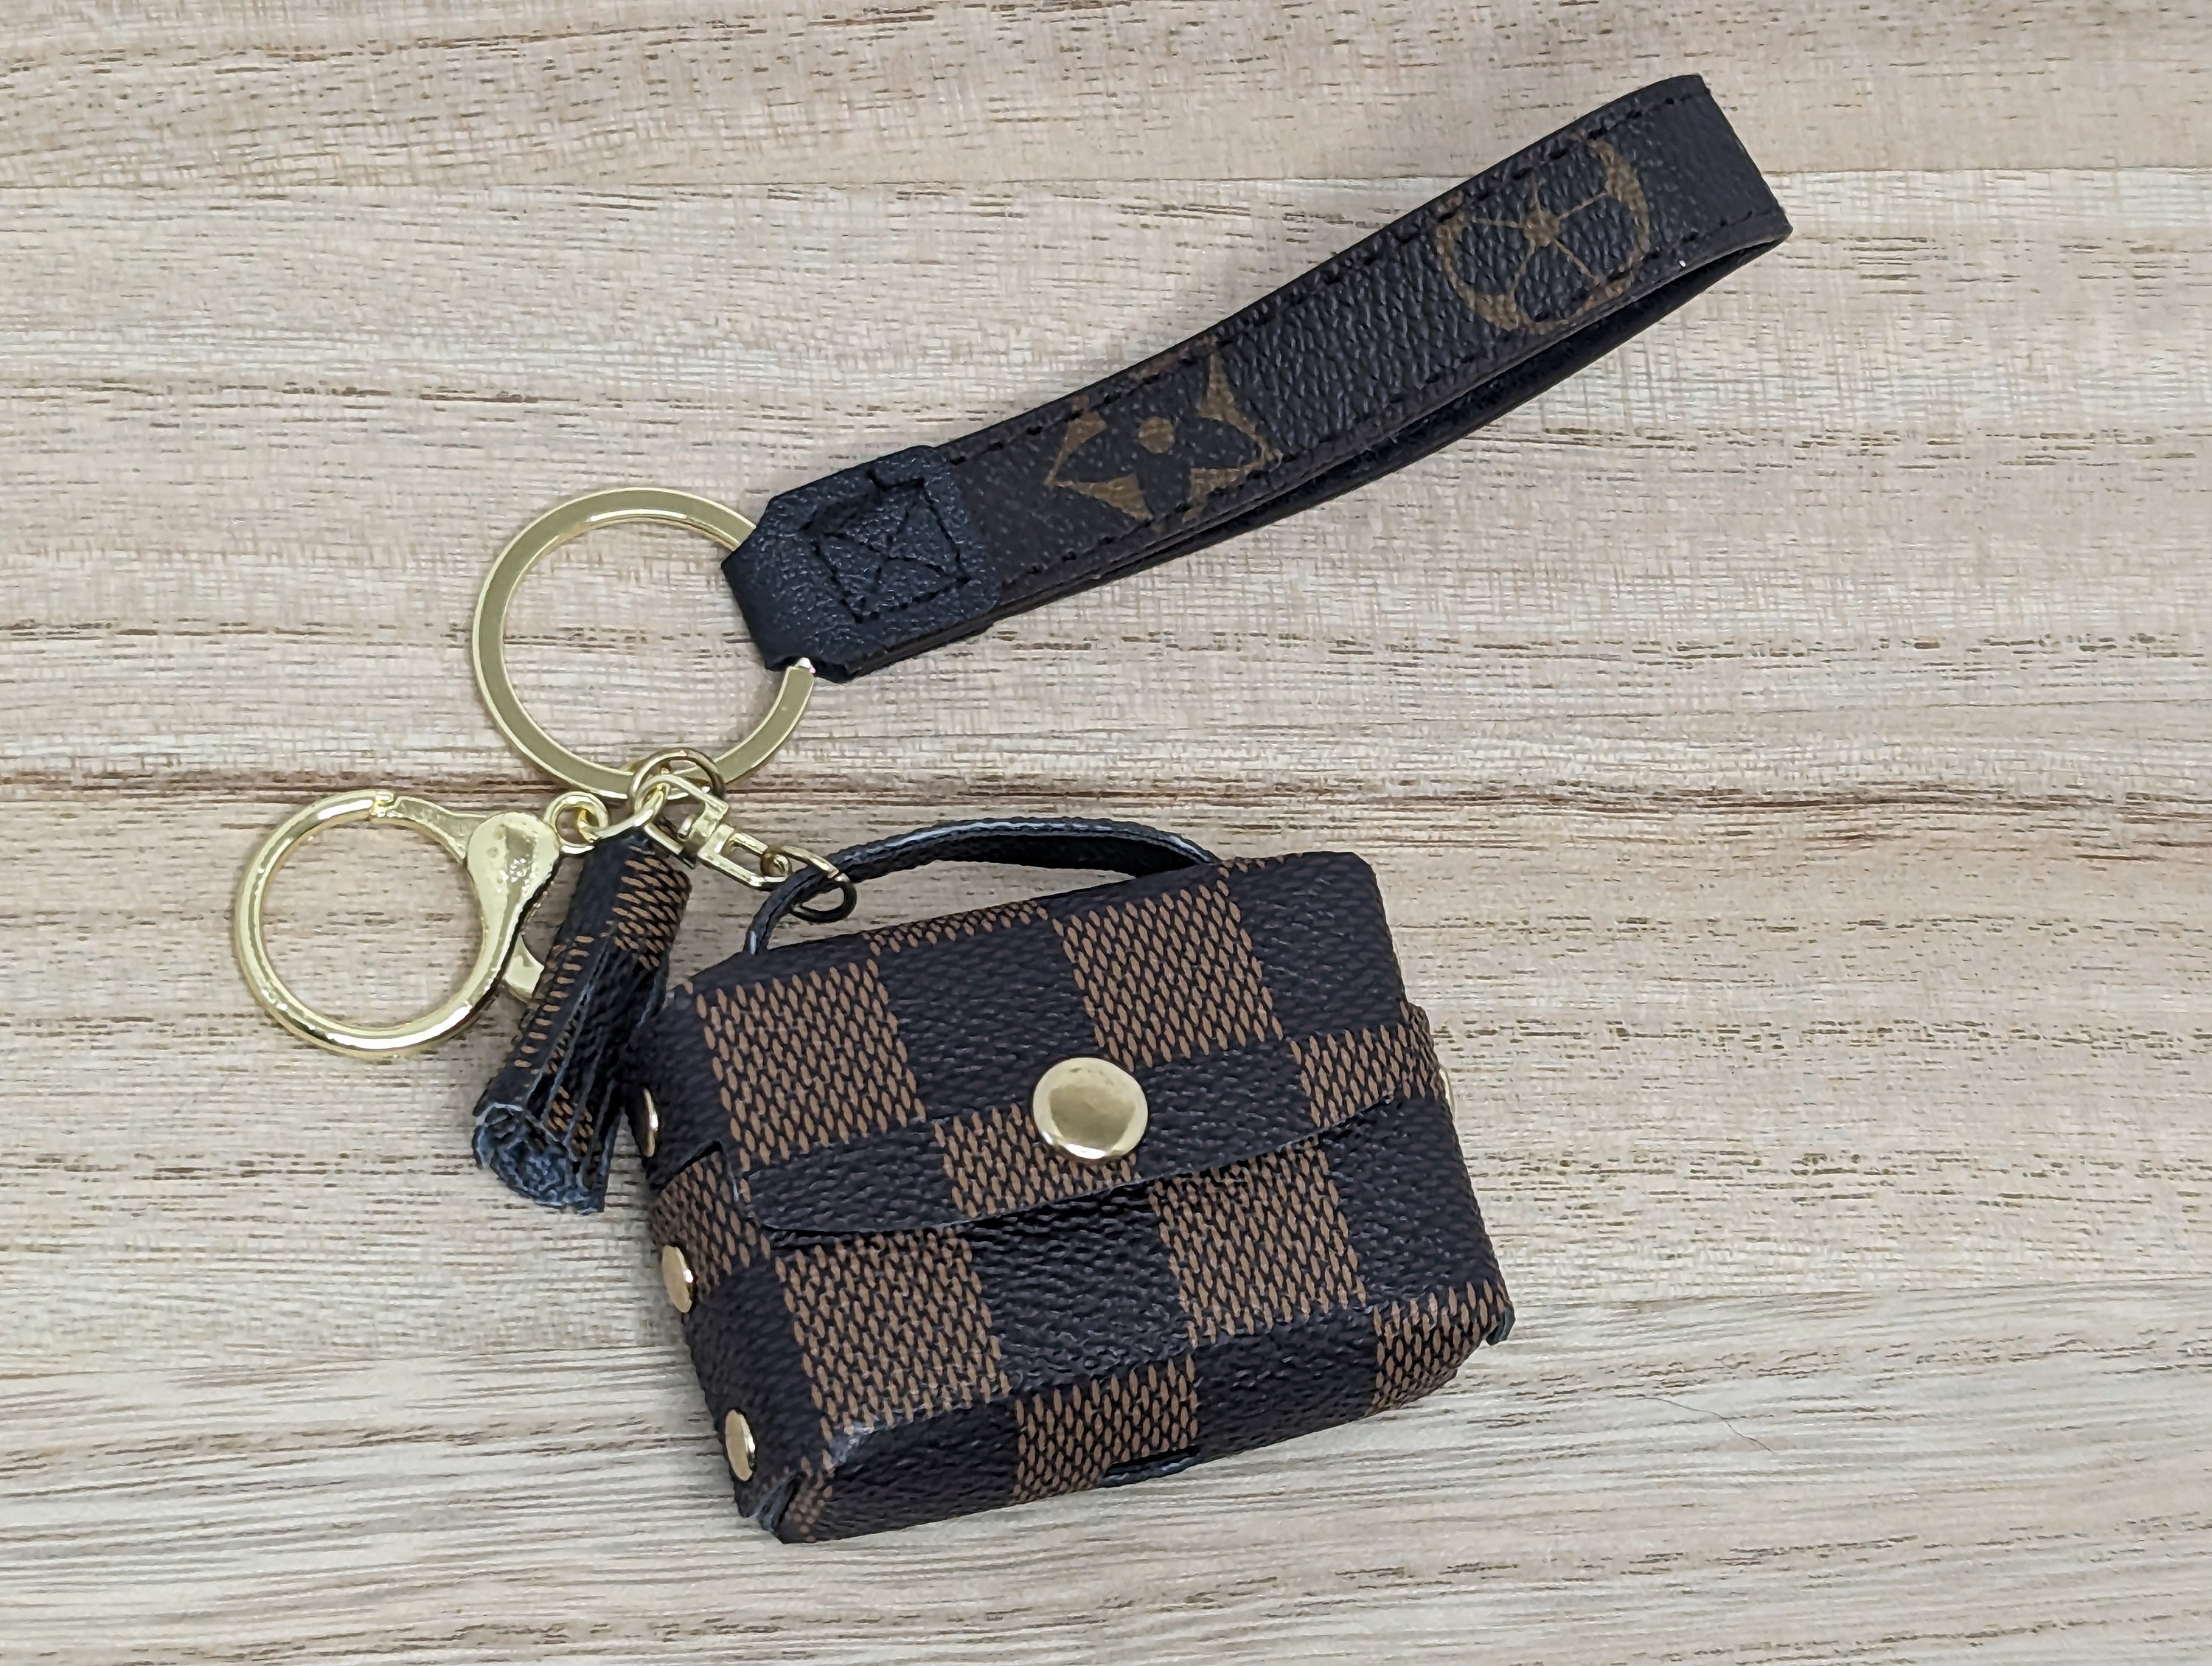 Louis Vuitton Cartoon Bag Charm Chain Coin Wallet L03 – Replica5